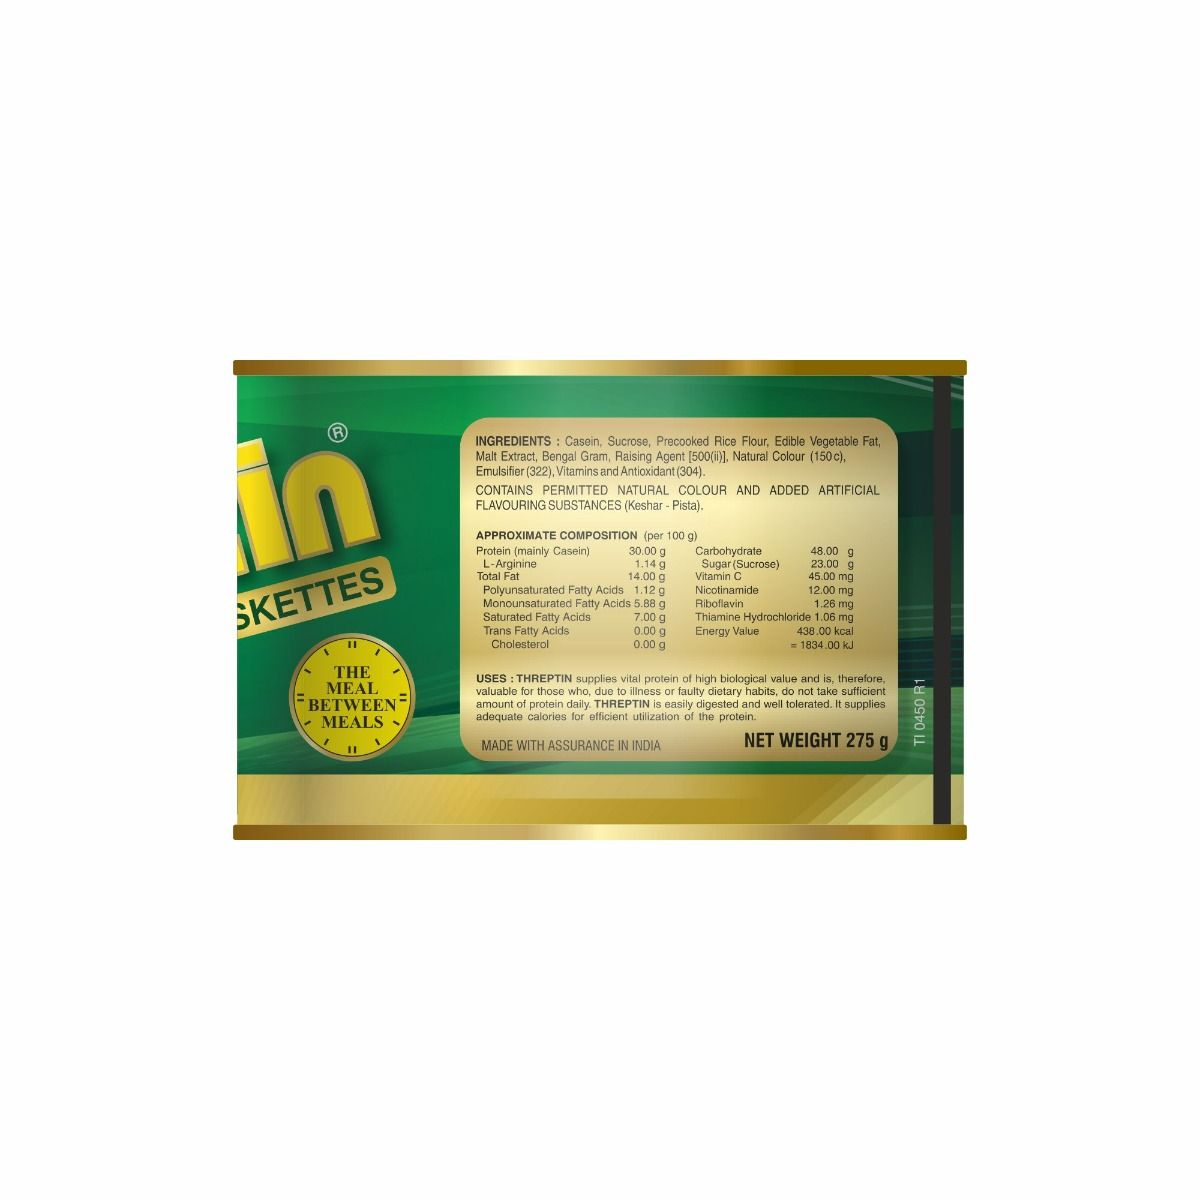 Threptin Fystiki Saffron Flavoured Diskettes, 275 gm, Pack of 1 